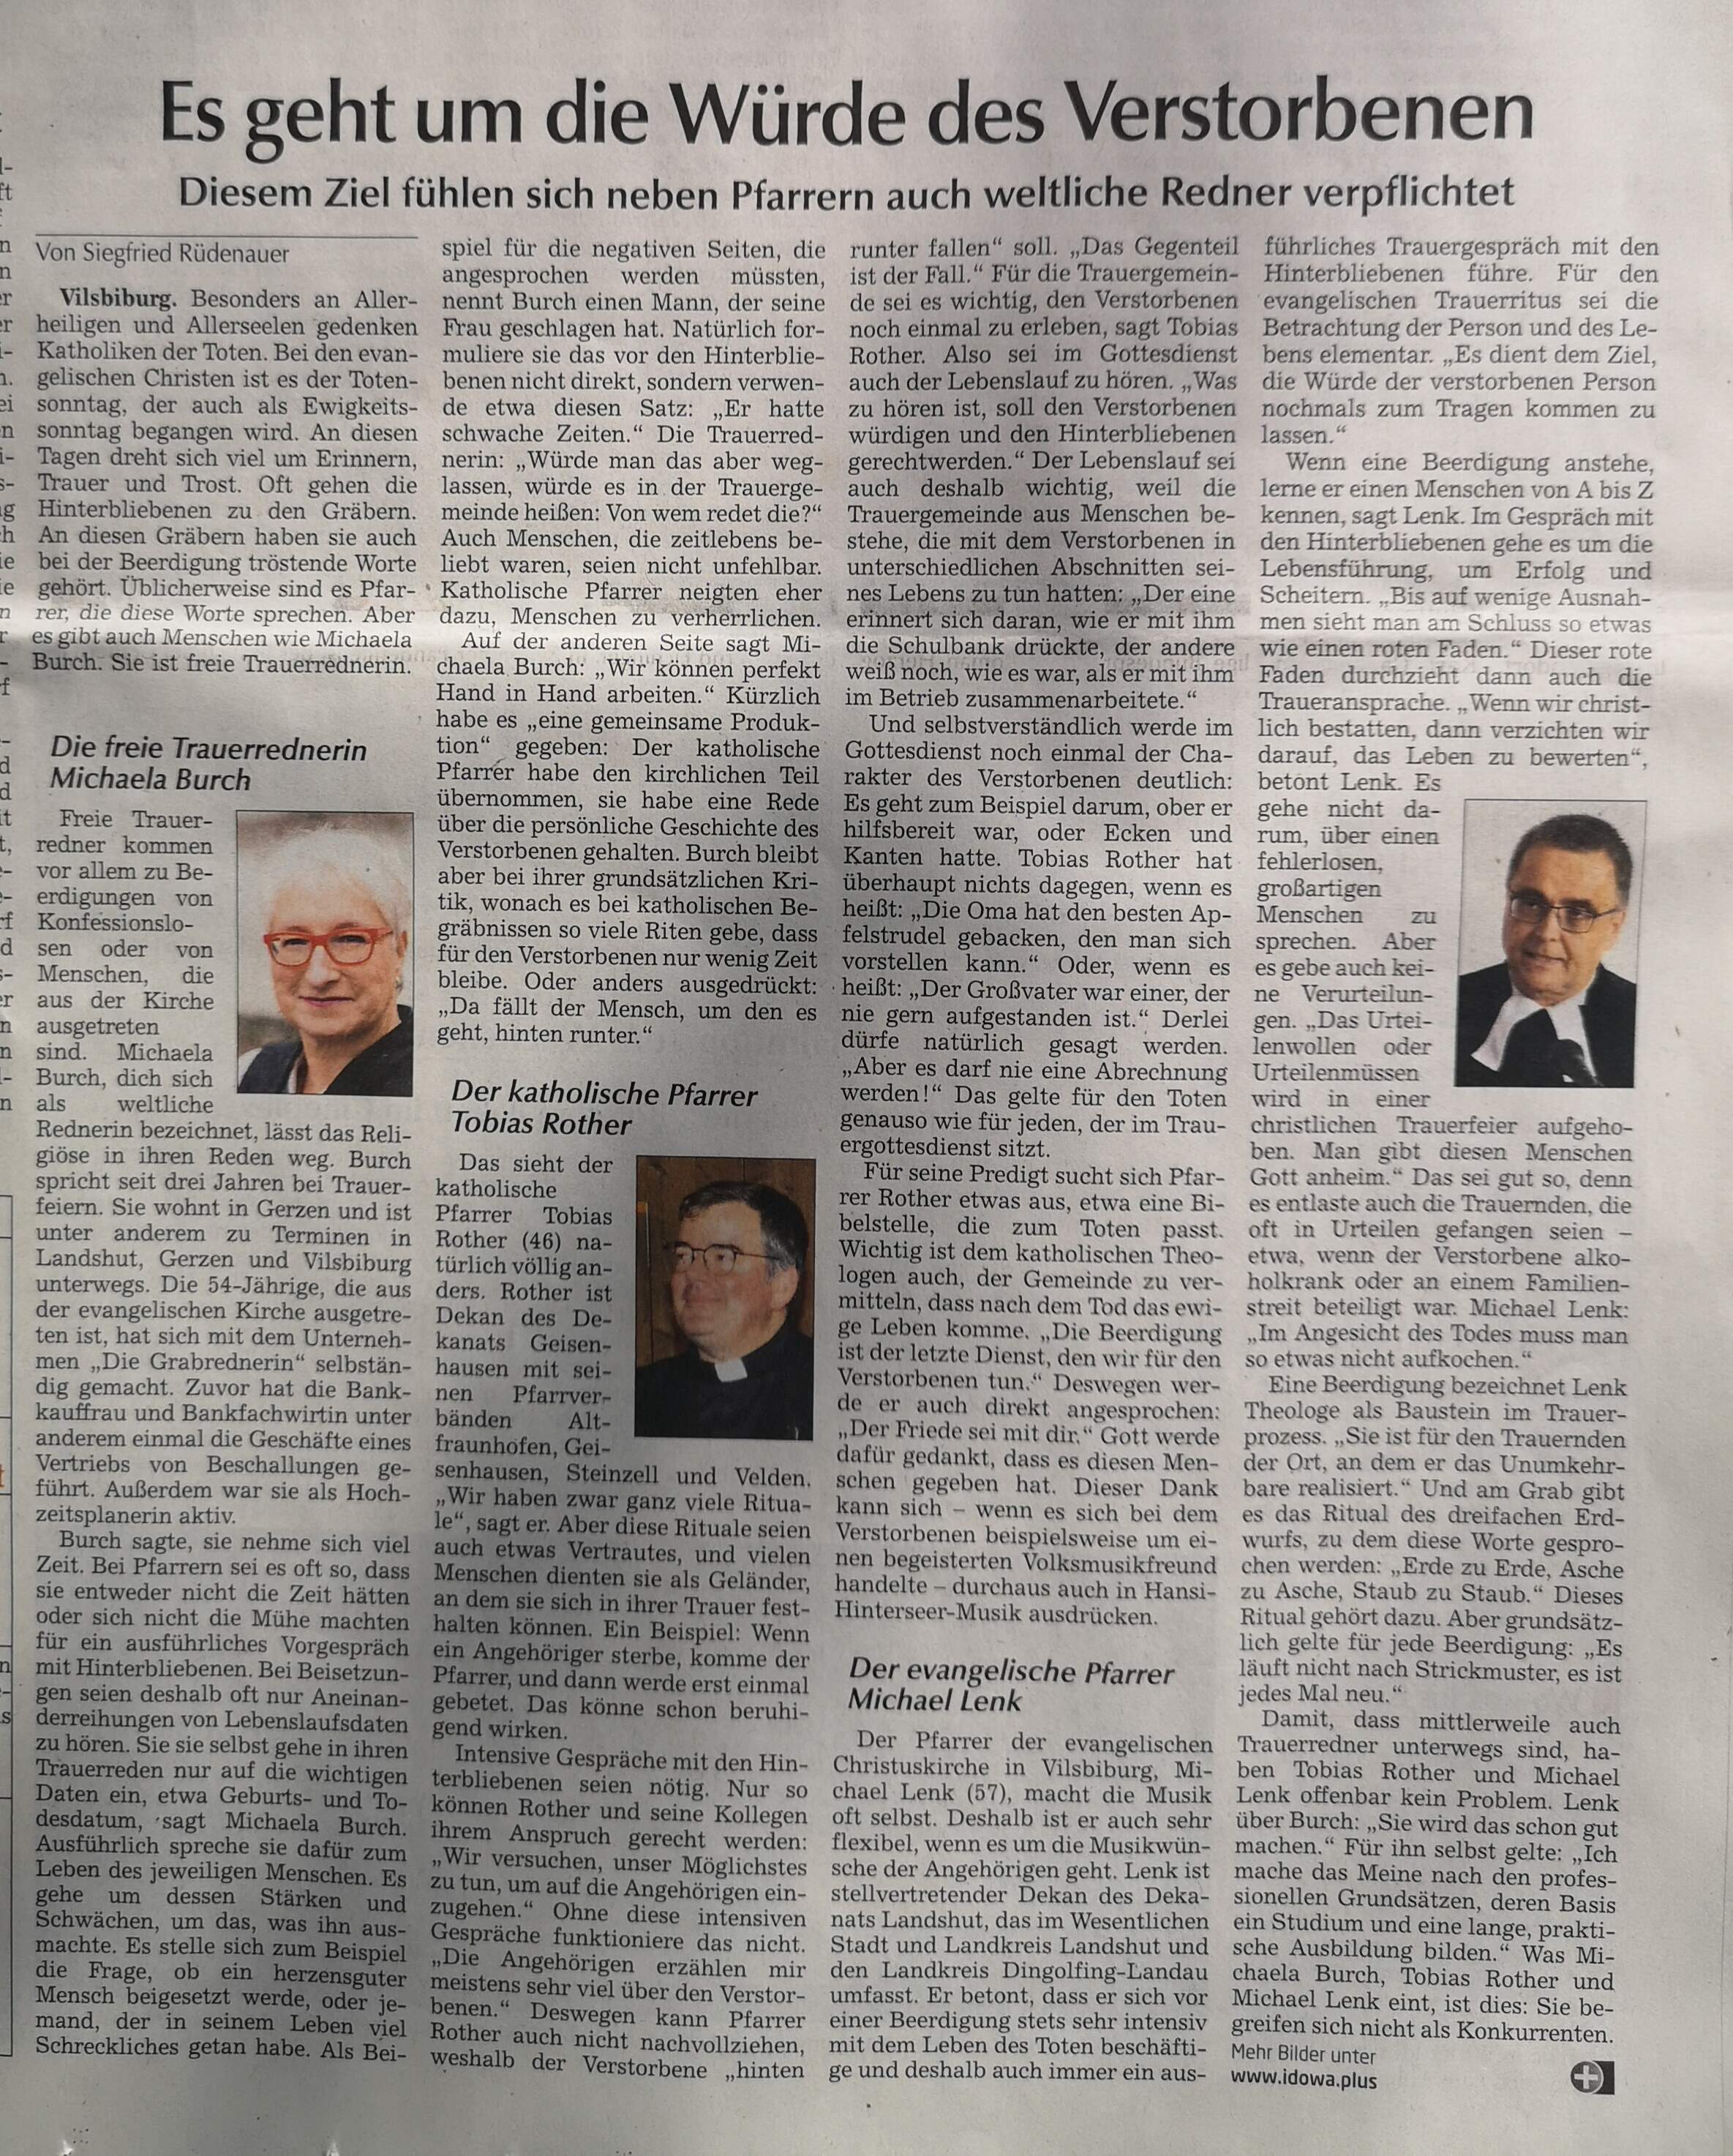 In der Vilsbiburger Zeitung fand sich ein Artikel über die Würde des Verstorbenen u.a. mit mir